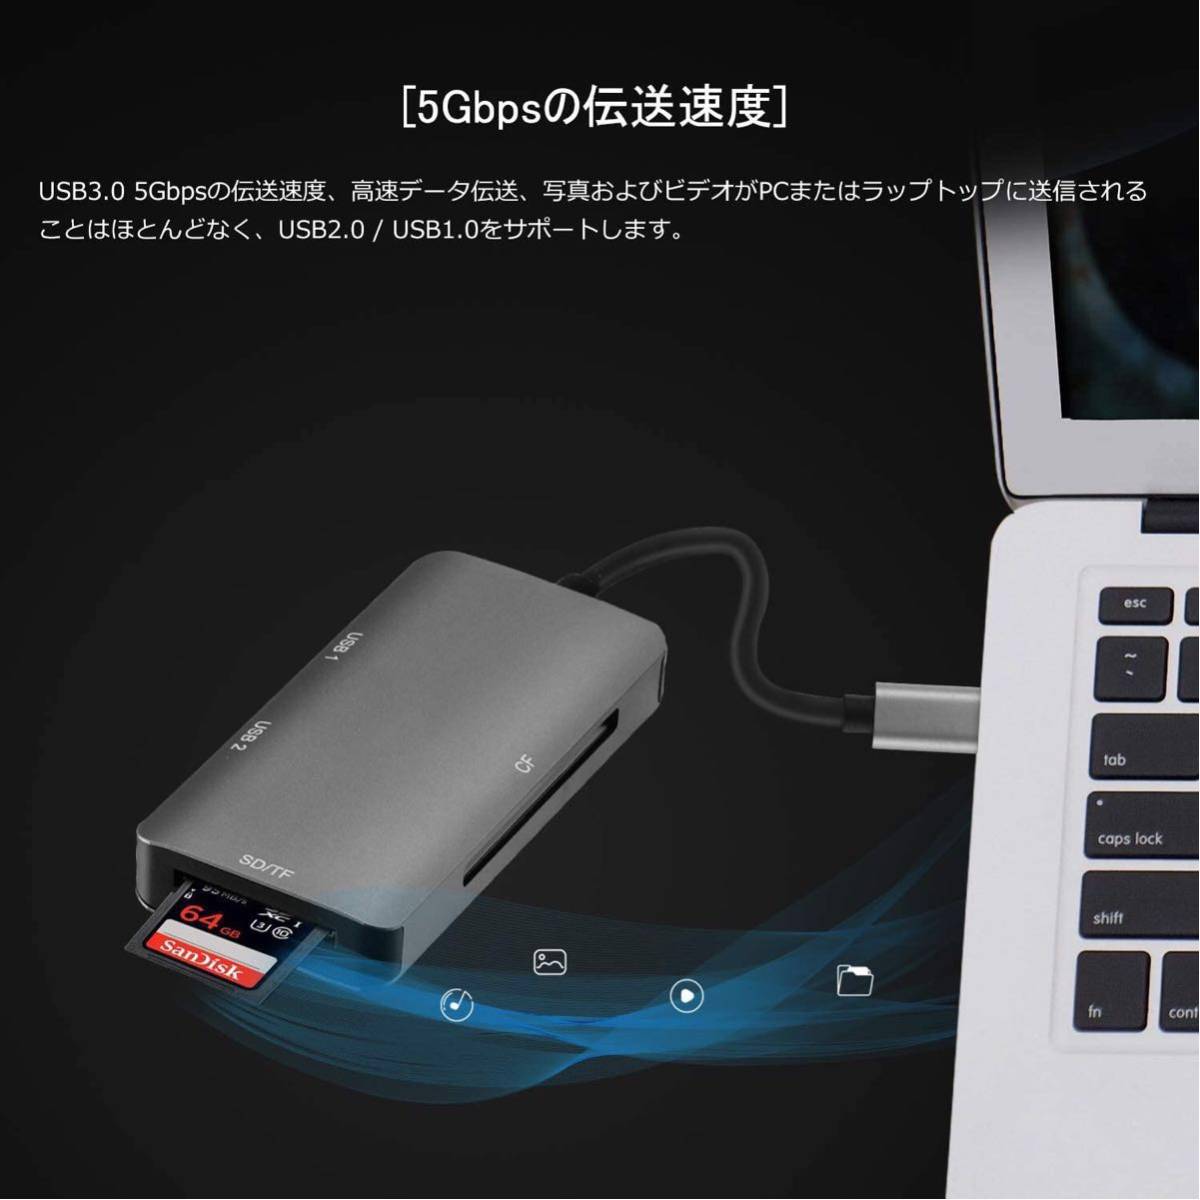 USB C 5-in-1マルチカードリーダーはOTG携帯電話の使用をサポートしCF/TF/SD/Uディスク/キーボード/マウスを同時に読み取ることができます